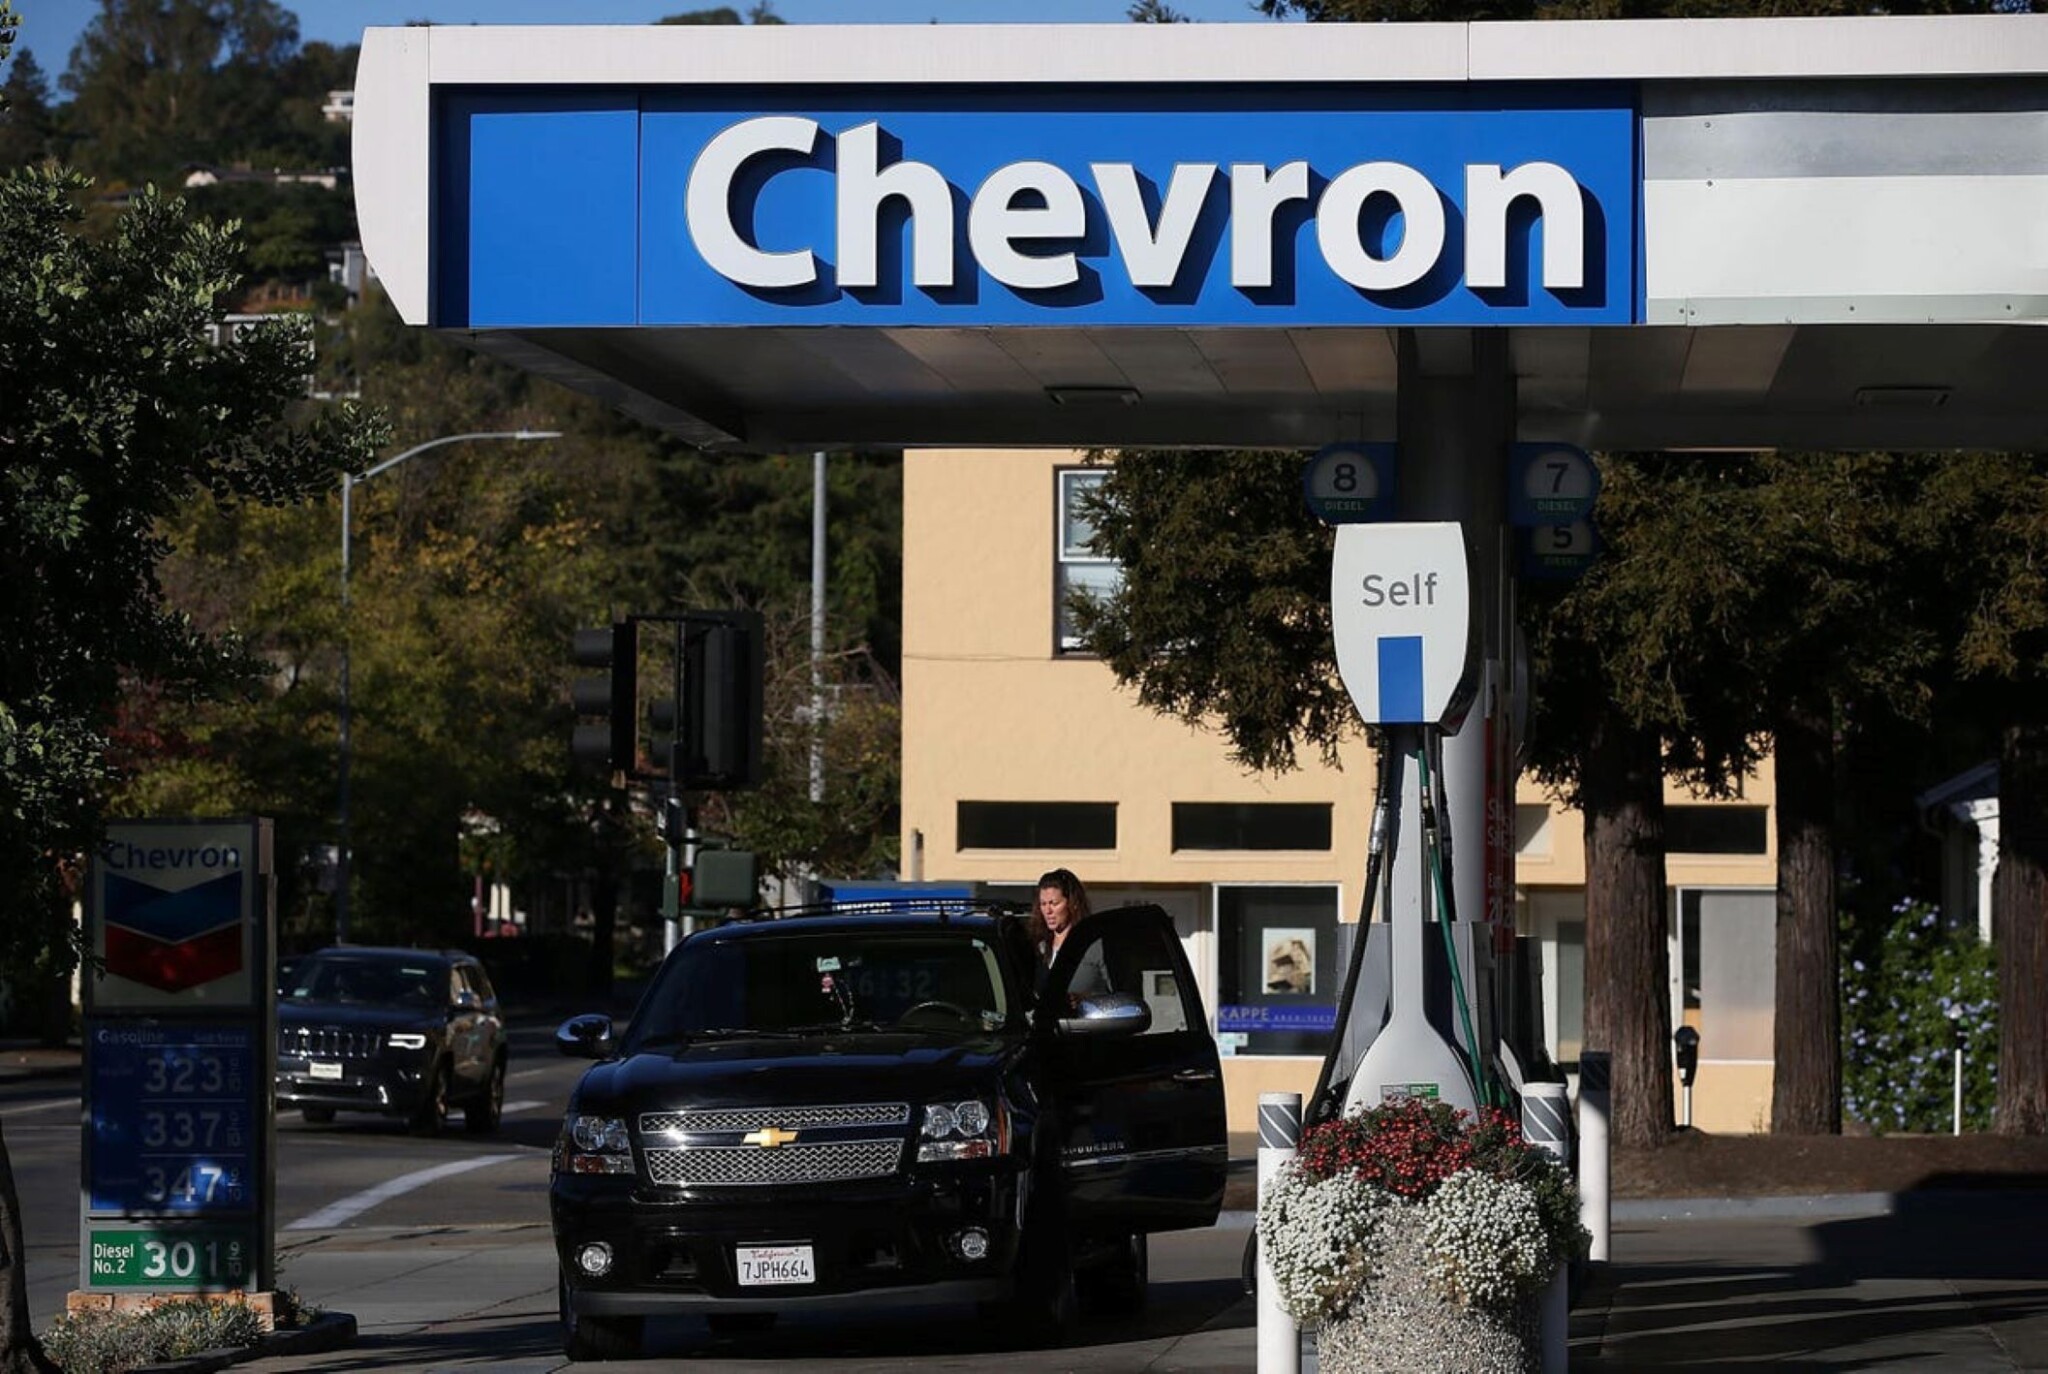 Ropný gigant Chevron investuje do alternativních paliv. Koupí výrobce bionafty Renewable Energy